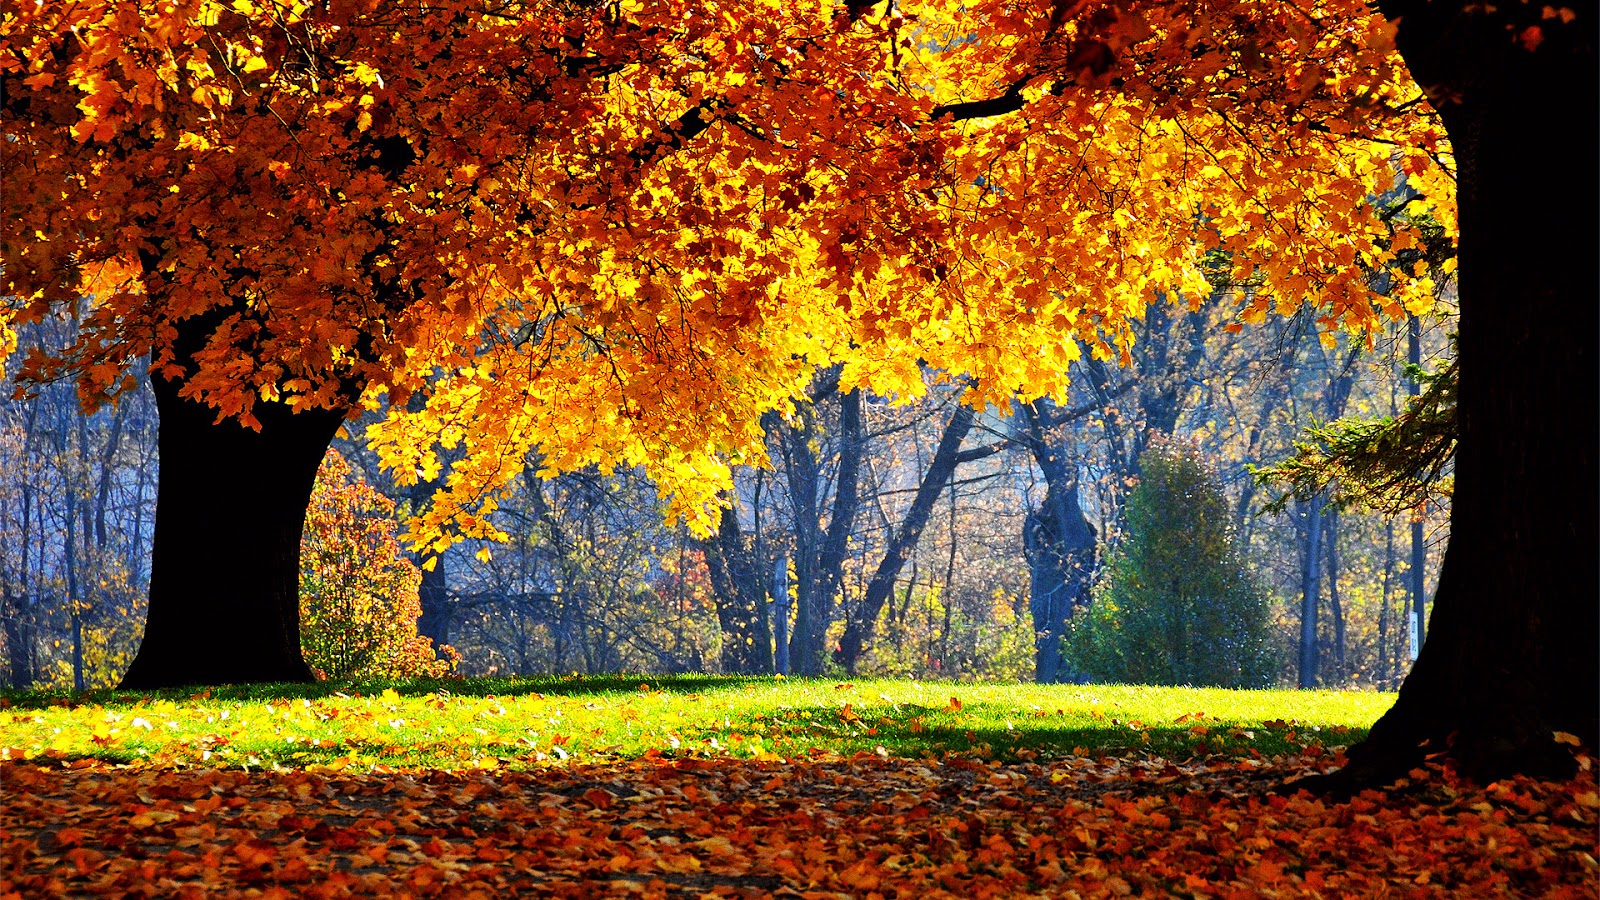 Autumn Wallpaper HD